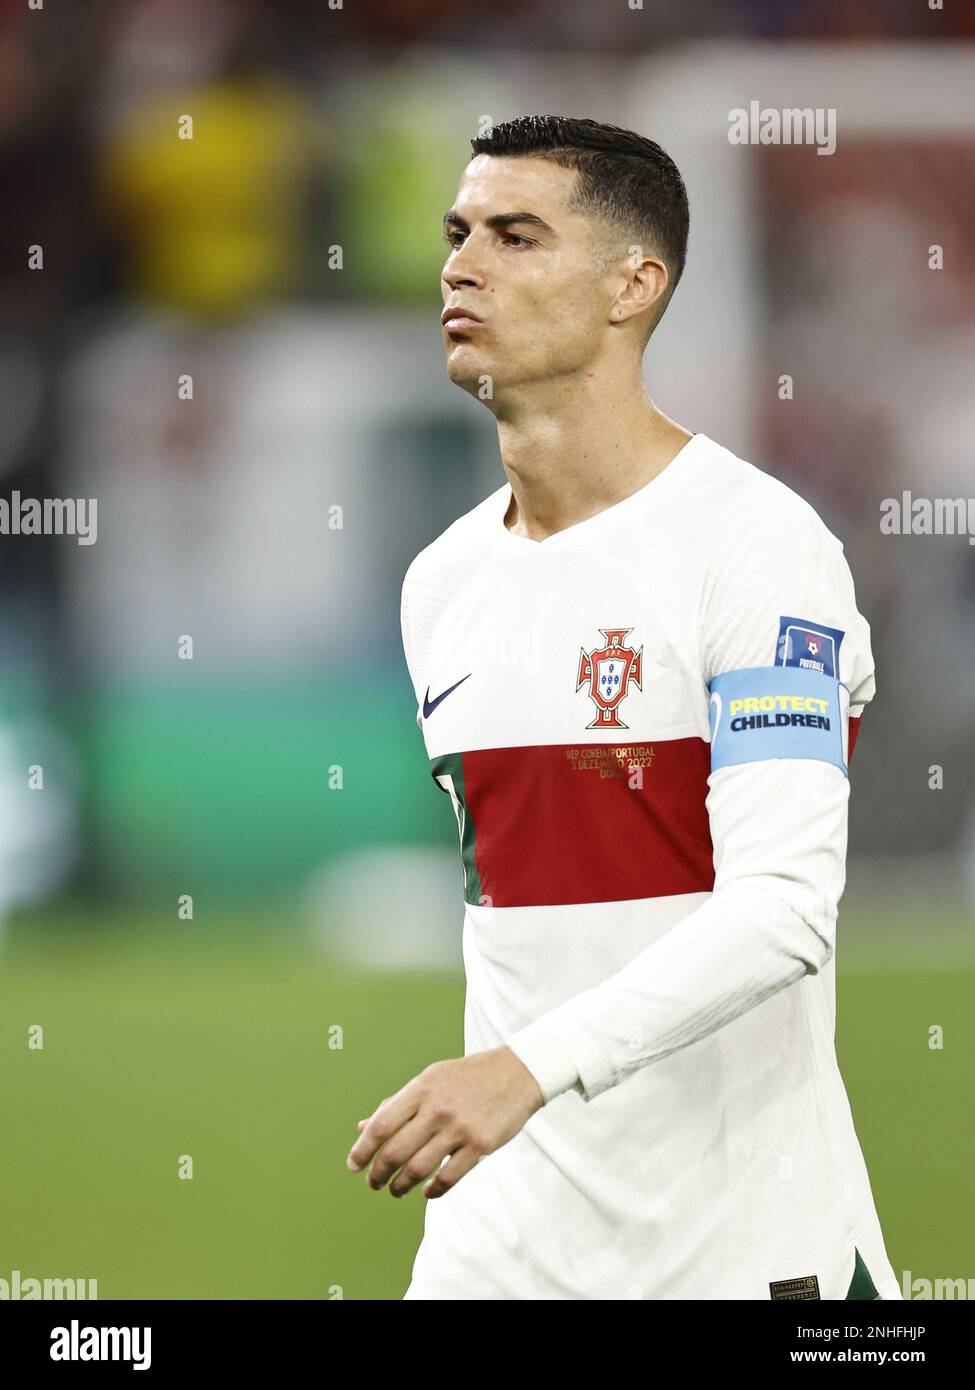 DOHA - Cristiano Ronaldo du Portugal pendant la coupe du monde de la FIFA Qatar 2022 Groupe H match entre la Corée du Sud et le Portugal au stade de la ville d'éducation sur 2 décembre 2022 à Doha, Qatar. AP | hauteur néerlandaise | MAURICE DE PIERRE Banque D'Images